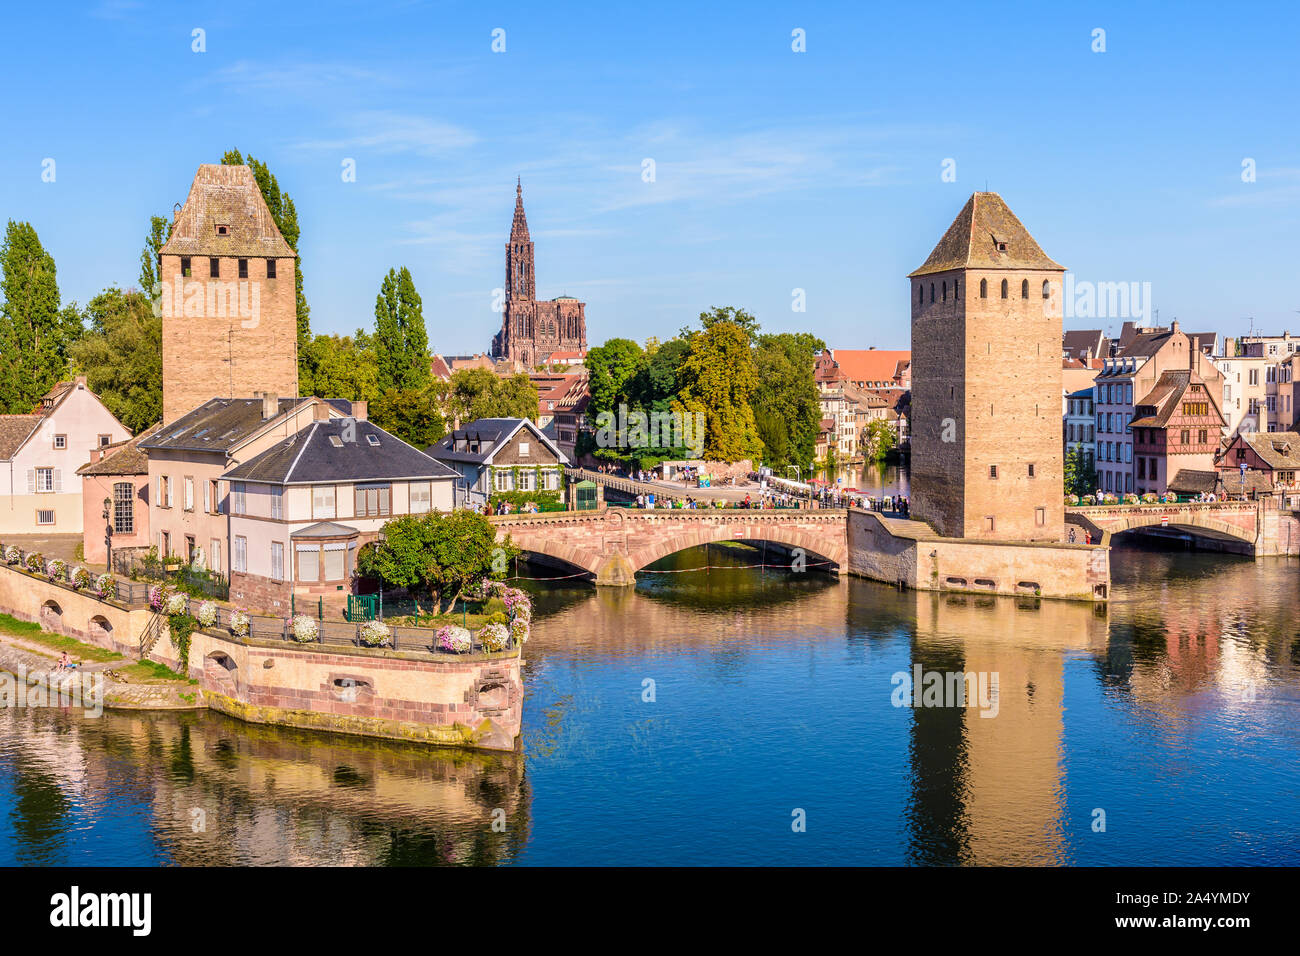 Les Ponts Couverts (ponts couverts) sur l'Ill dans le quartier de la Petite France à Strasbourg, France, et de la cathédrale Notre-Dame au loin. Banque D'Images